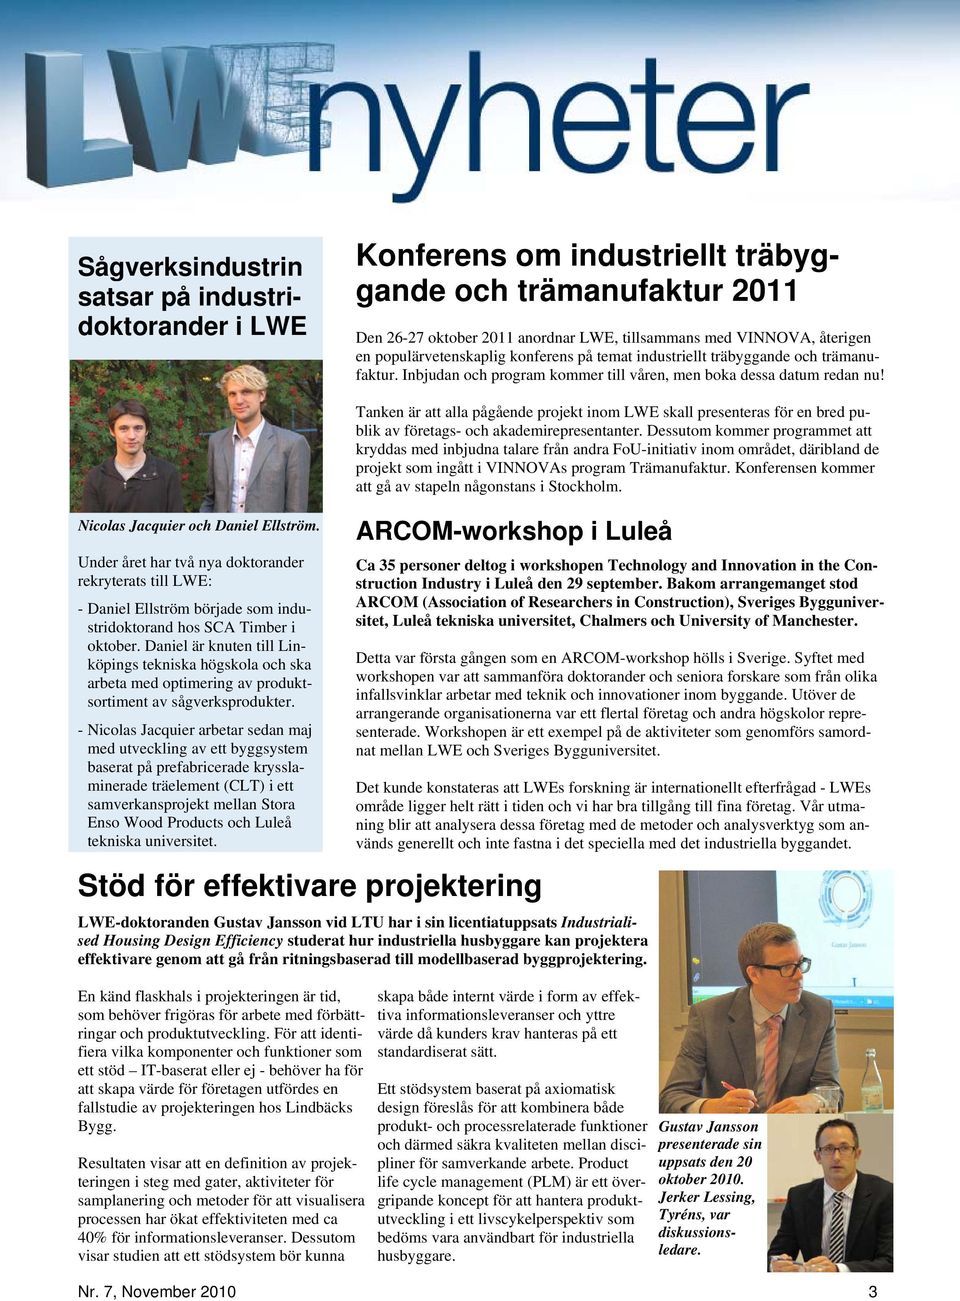 Under året har två nya doktorander rekryterats till LWE: - Daniel Ellström började som industridoktorand hos SCA Timber i oktober.